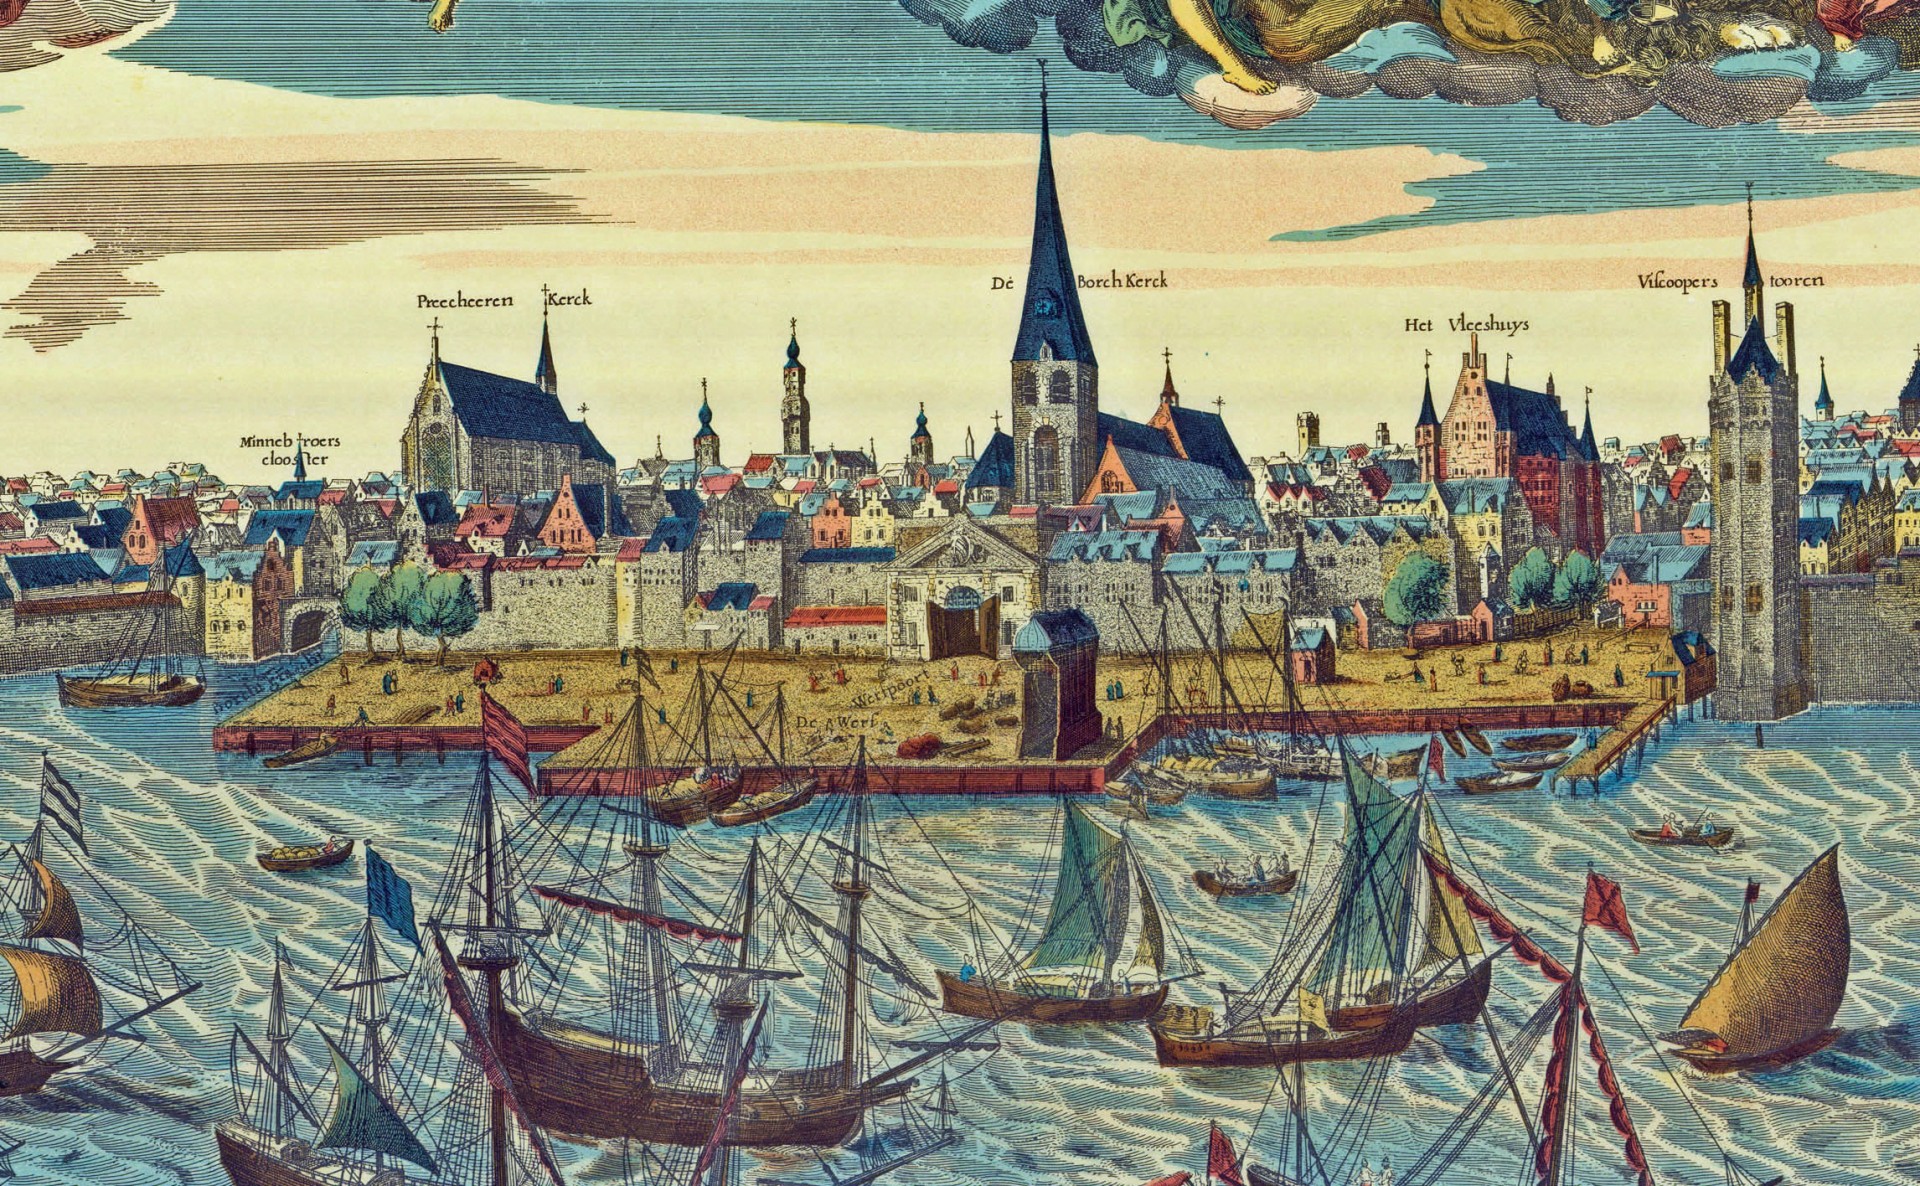 Deze afbeelding laat een zicht op de rede zien, met de burcht, omstreeks 1600